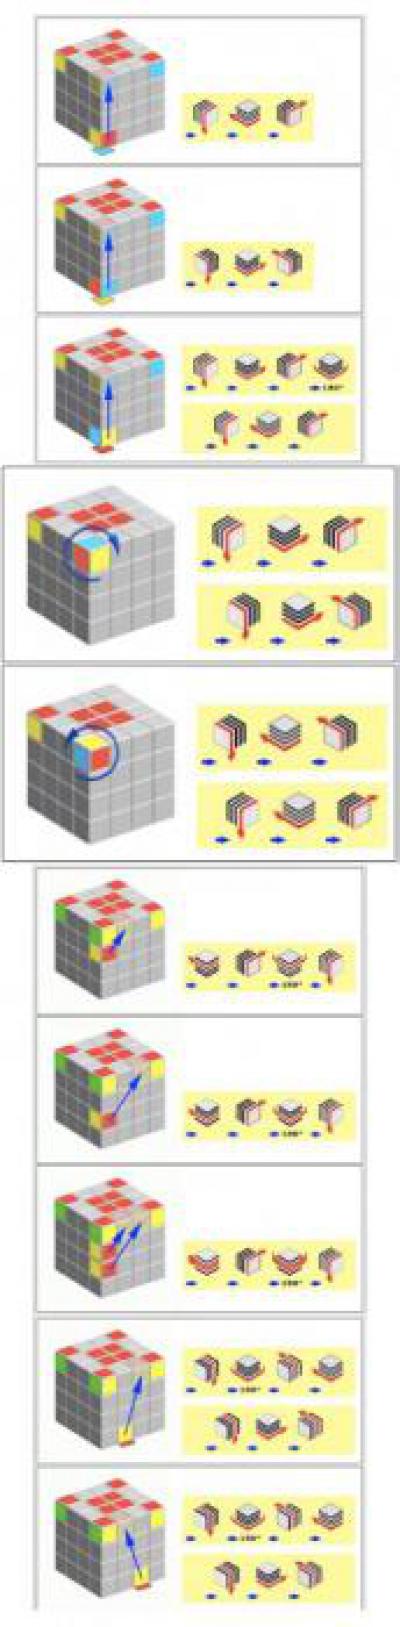 Кубик 4х4 сборка для начинающих схема. Кубик рубик 4х4 схема сборки. Схема сборки кубика Рубика 4х4. Схема кубика Рубика 4 на 4. Комбинации кубика Рубика 4х4.